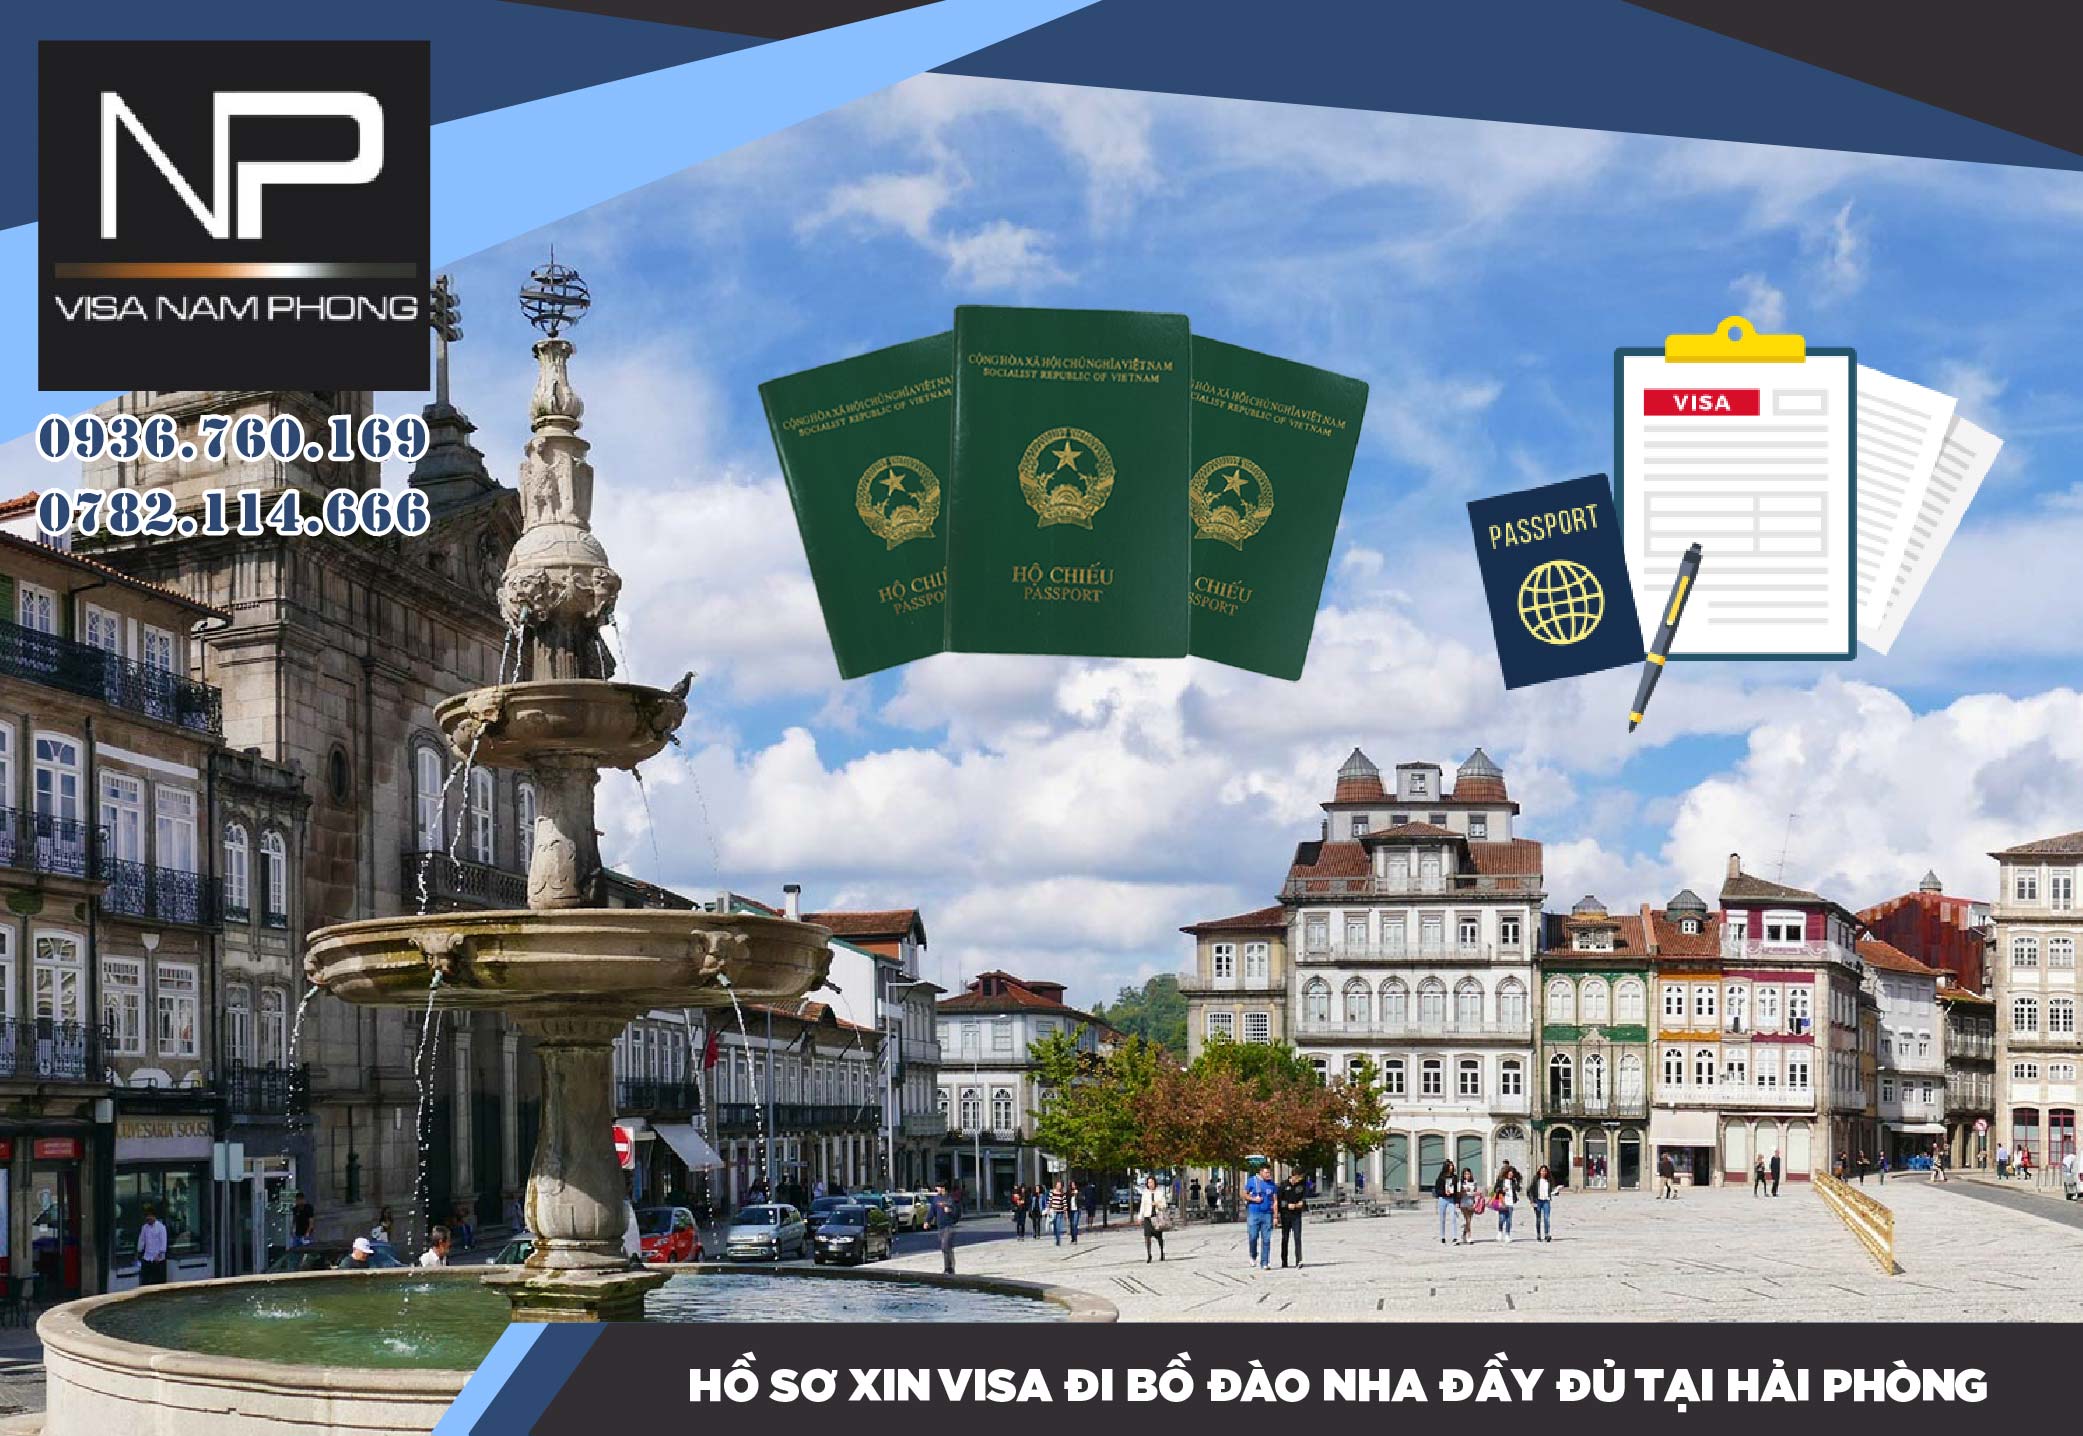 Hồ sơ xin visa đi Bồ Đào Nha đầy đủ tại Hải Phòng